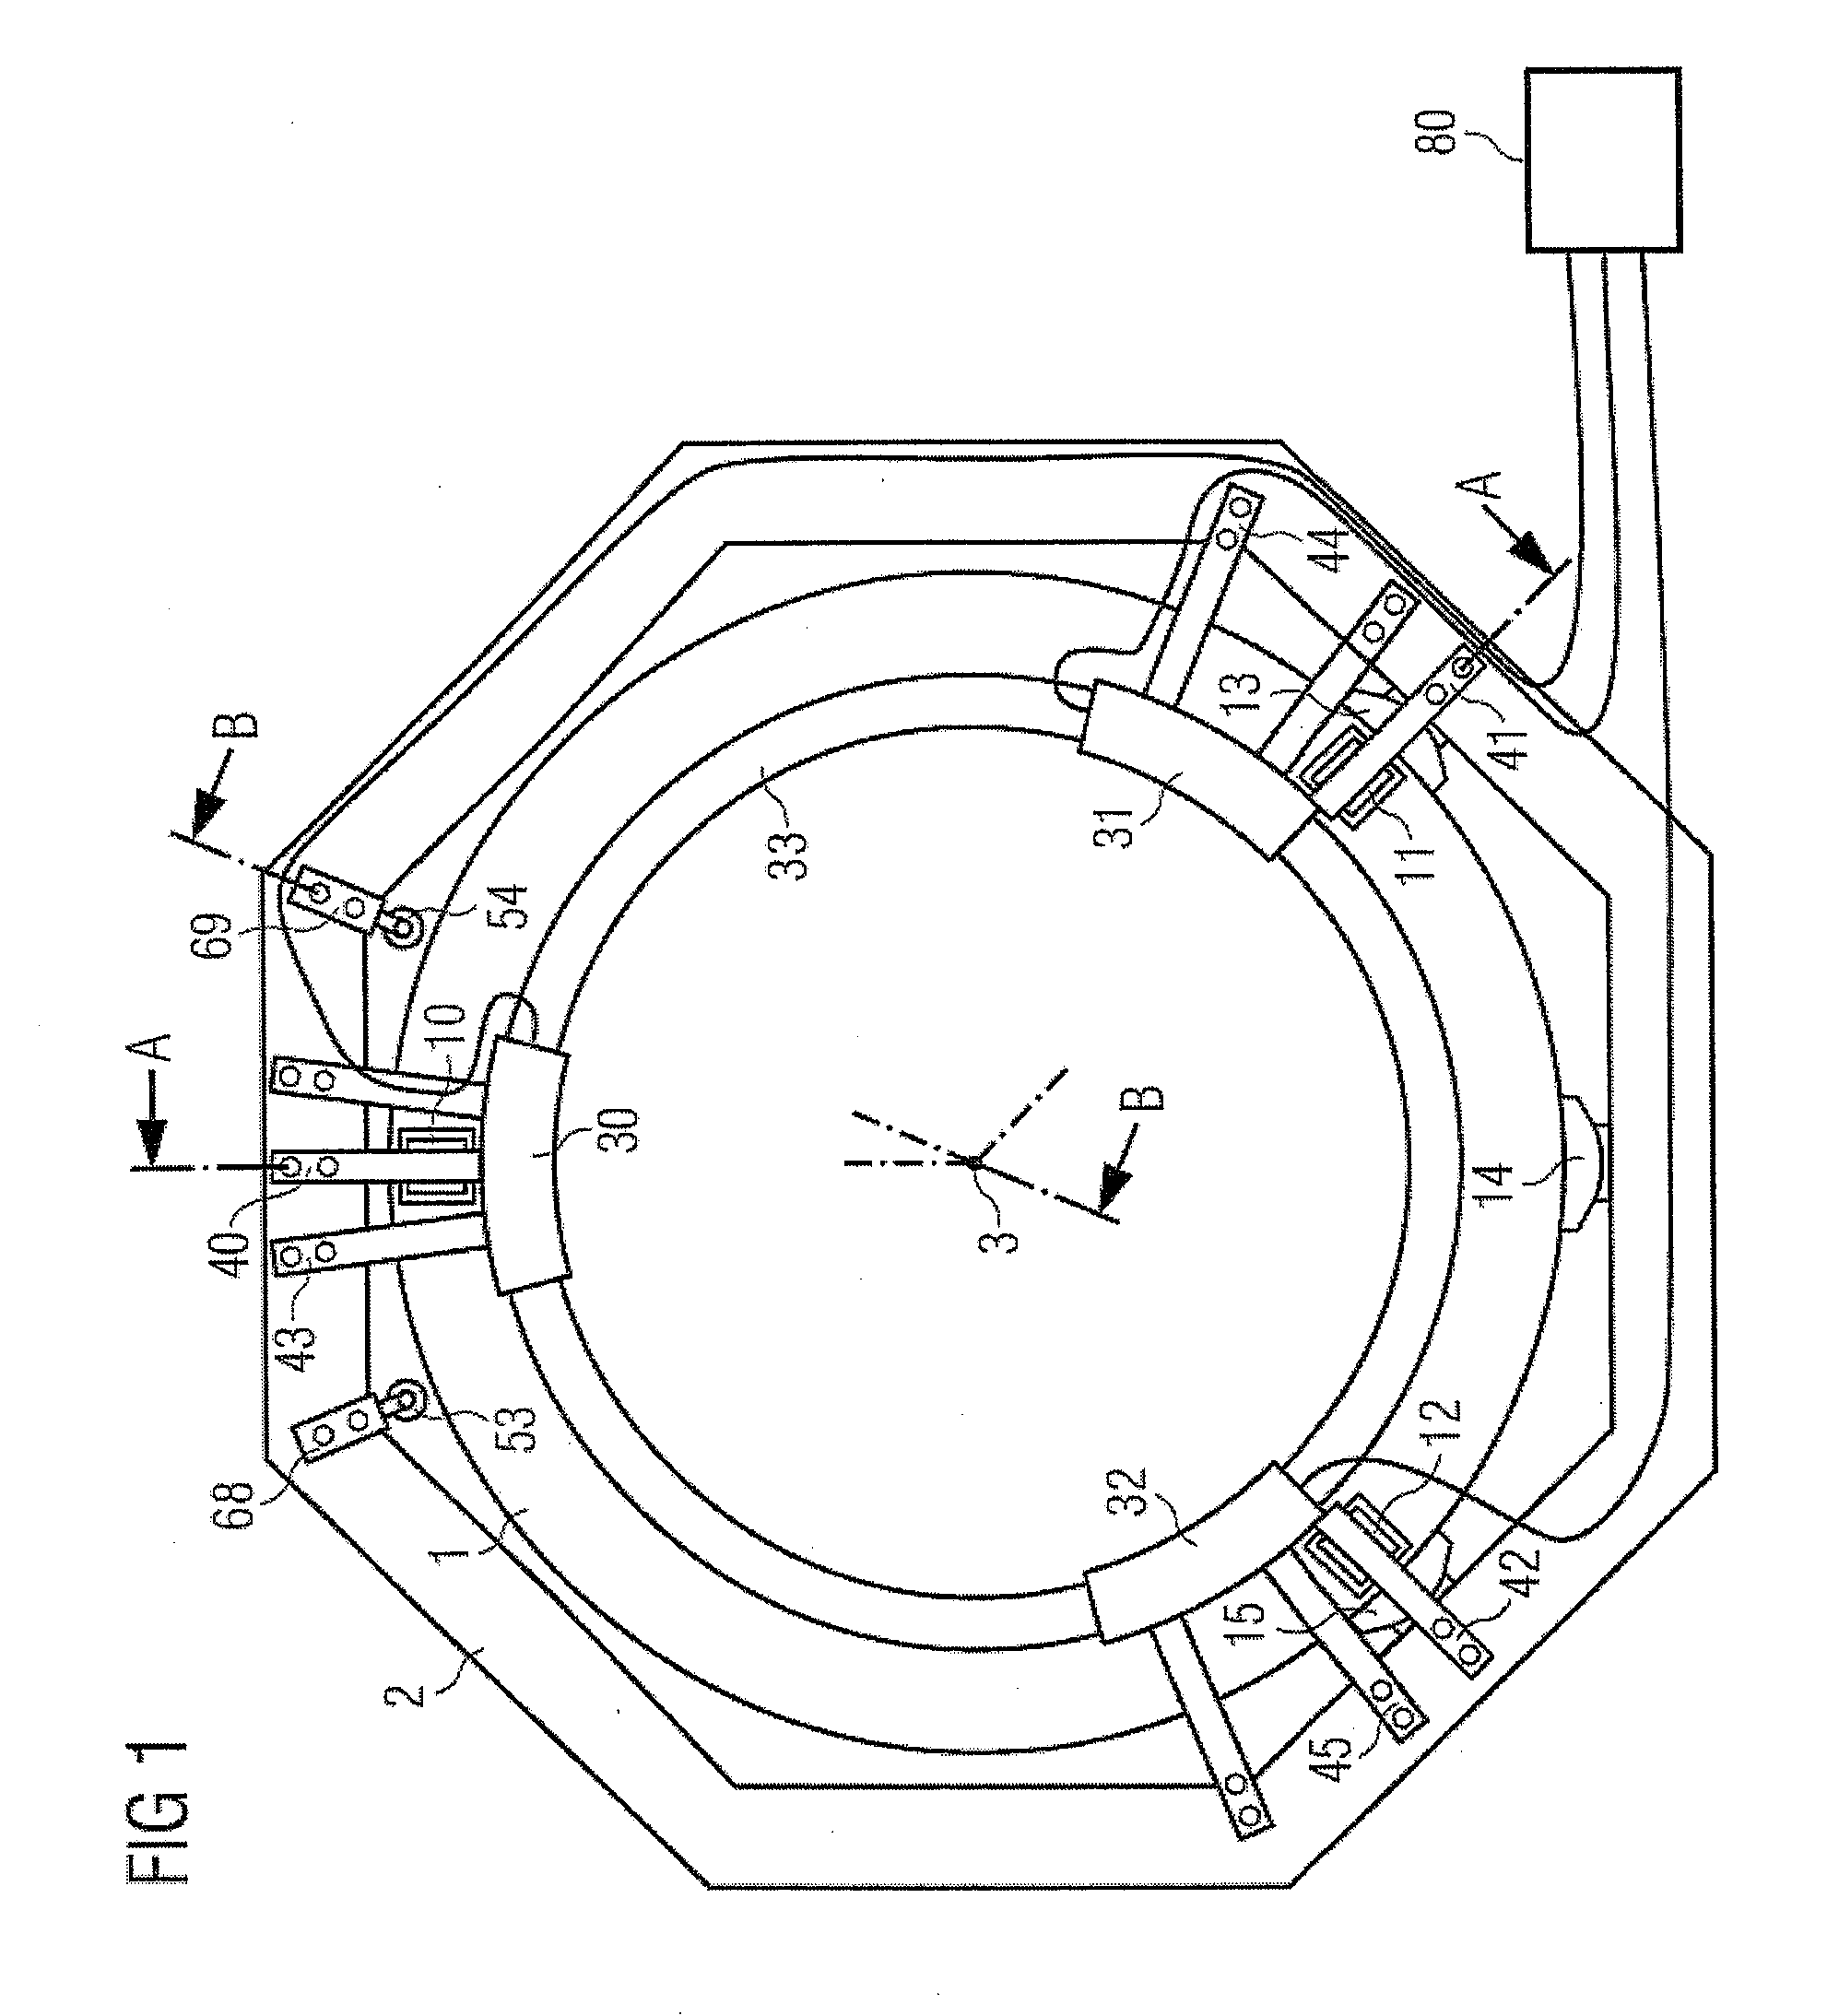 Ct scanner gantry with aerostatic bearing and segmented ring motor